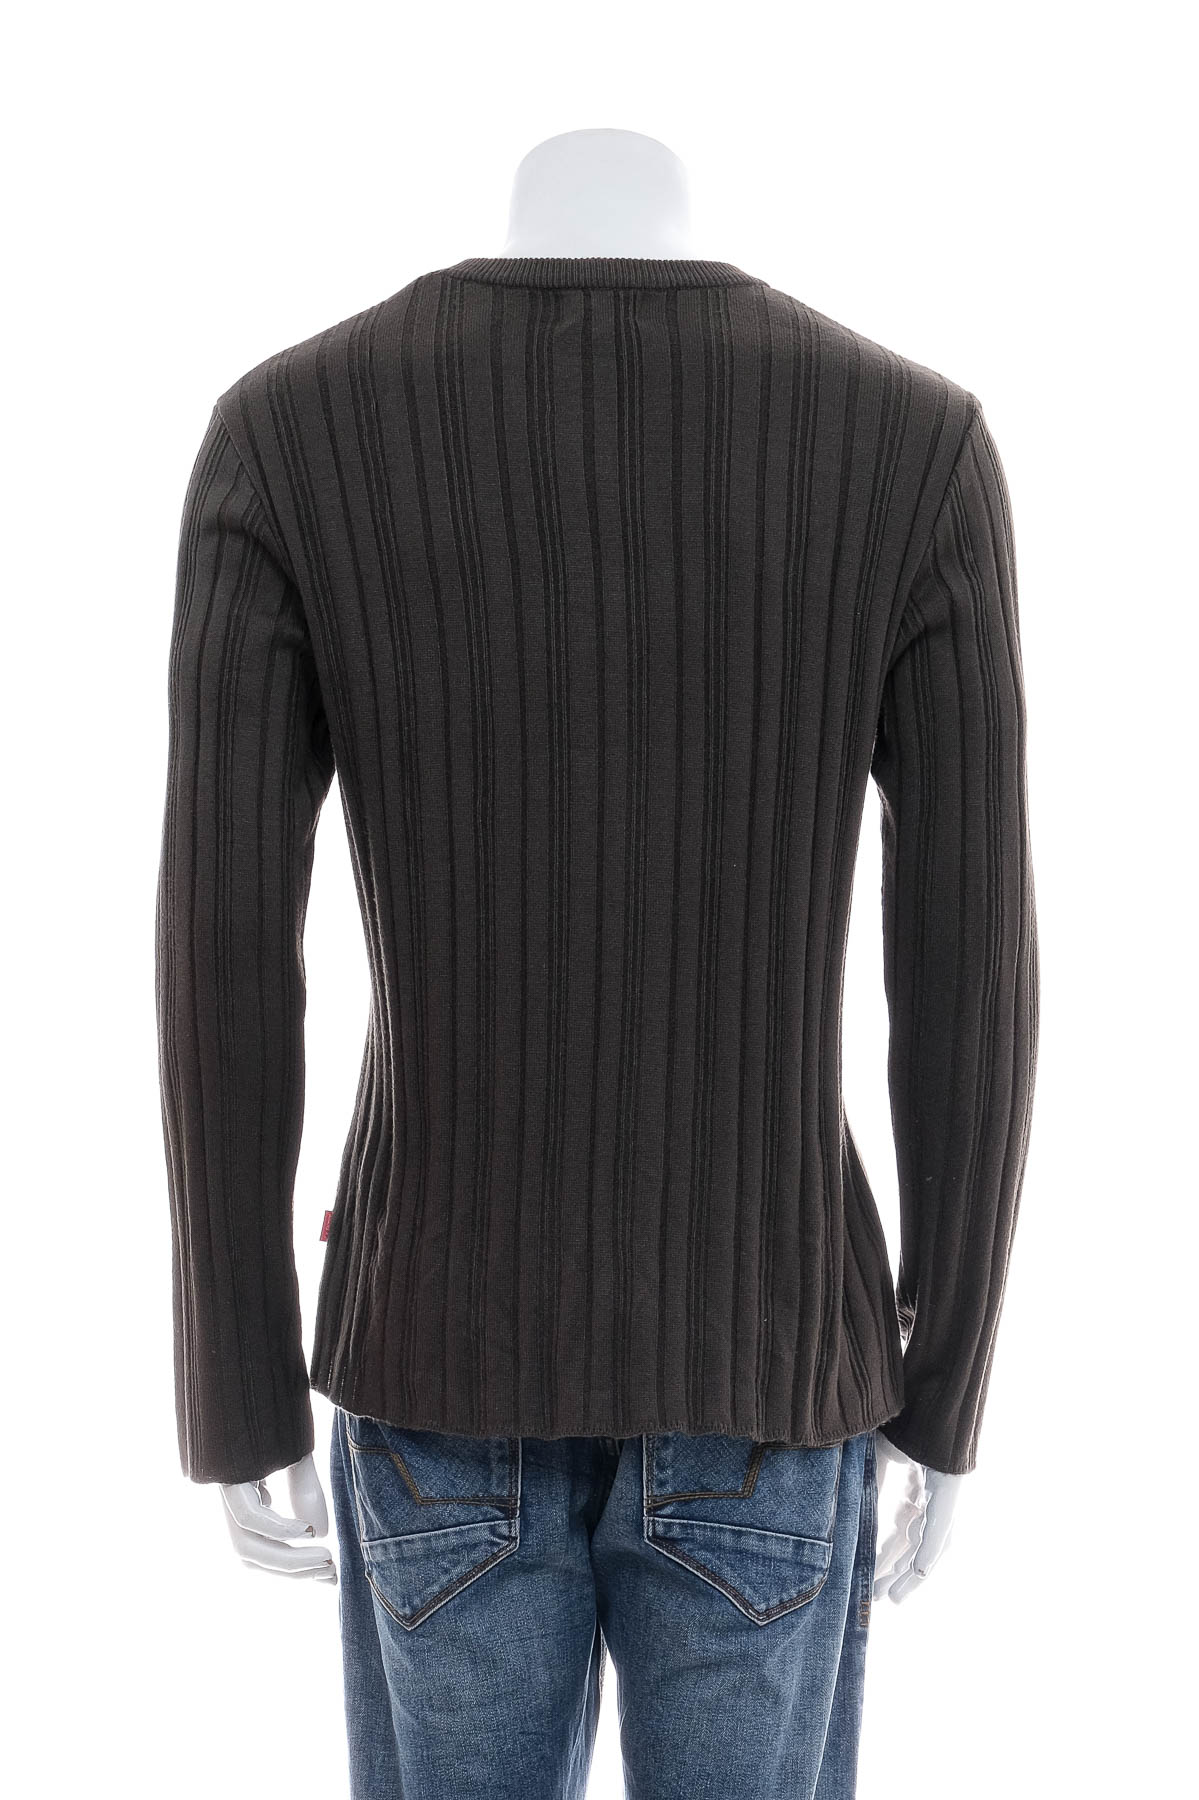 Men's sweater - T'z Factory - 1